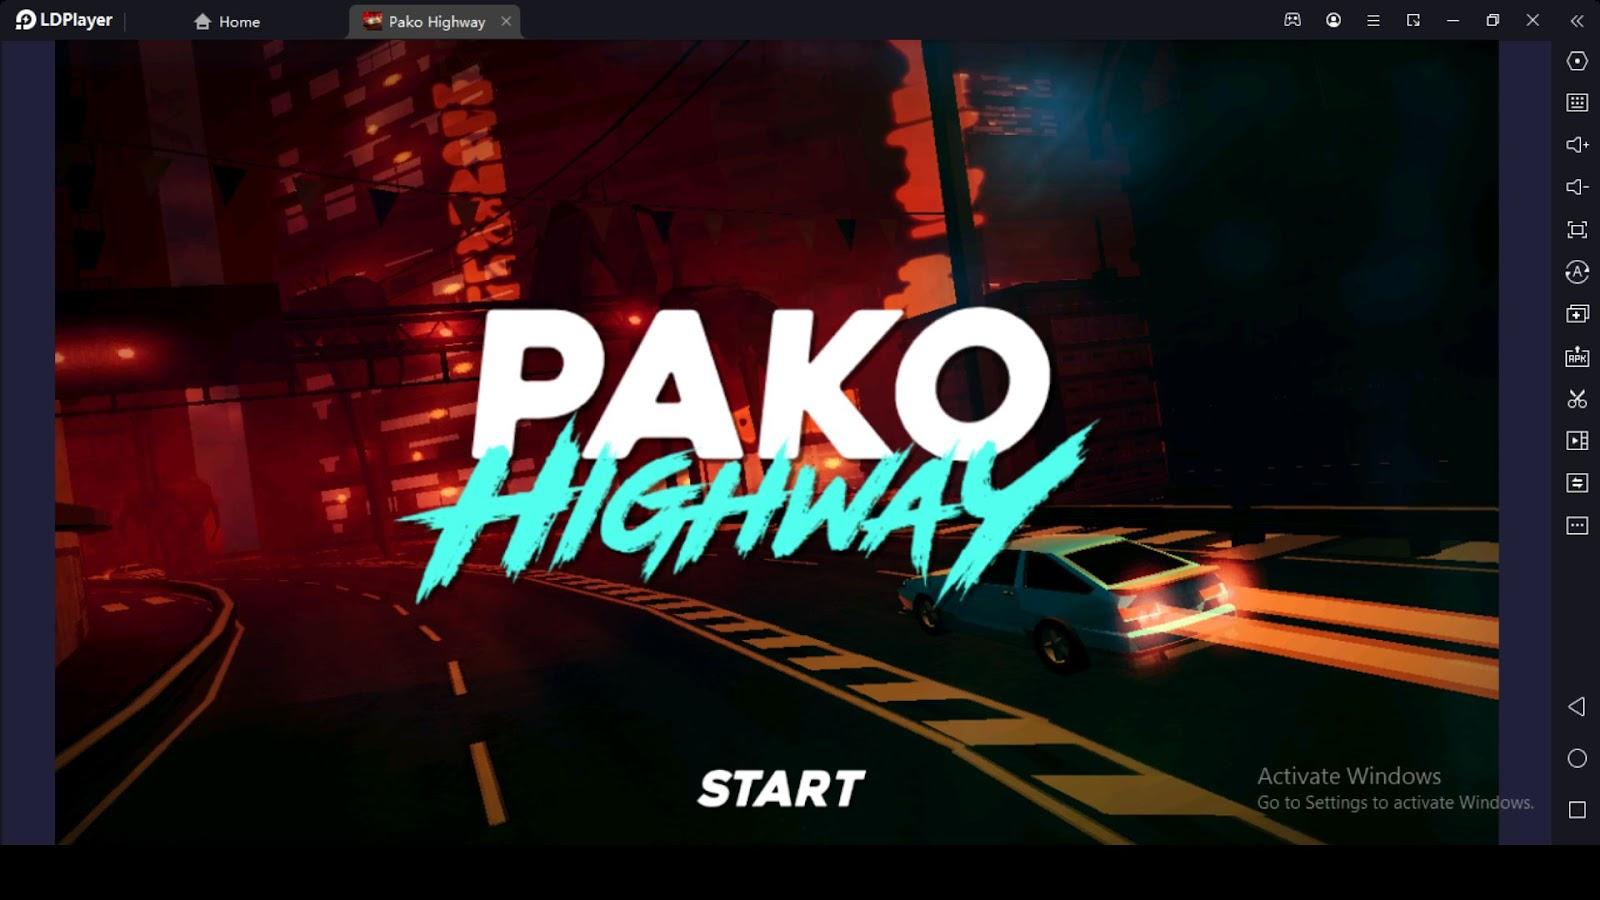 Pako Highway Tips with Best Tactics